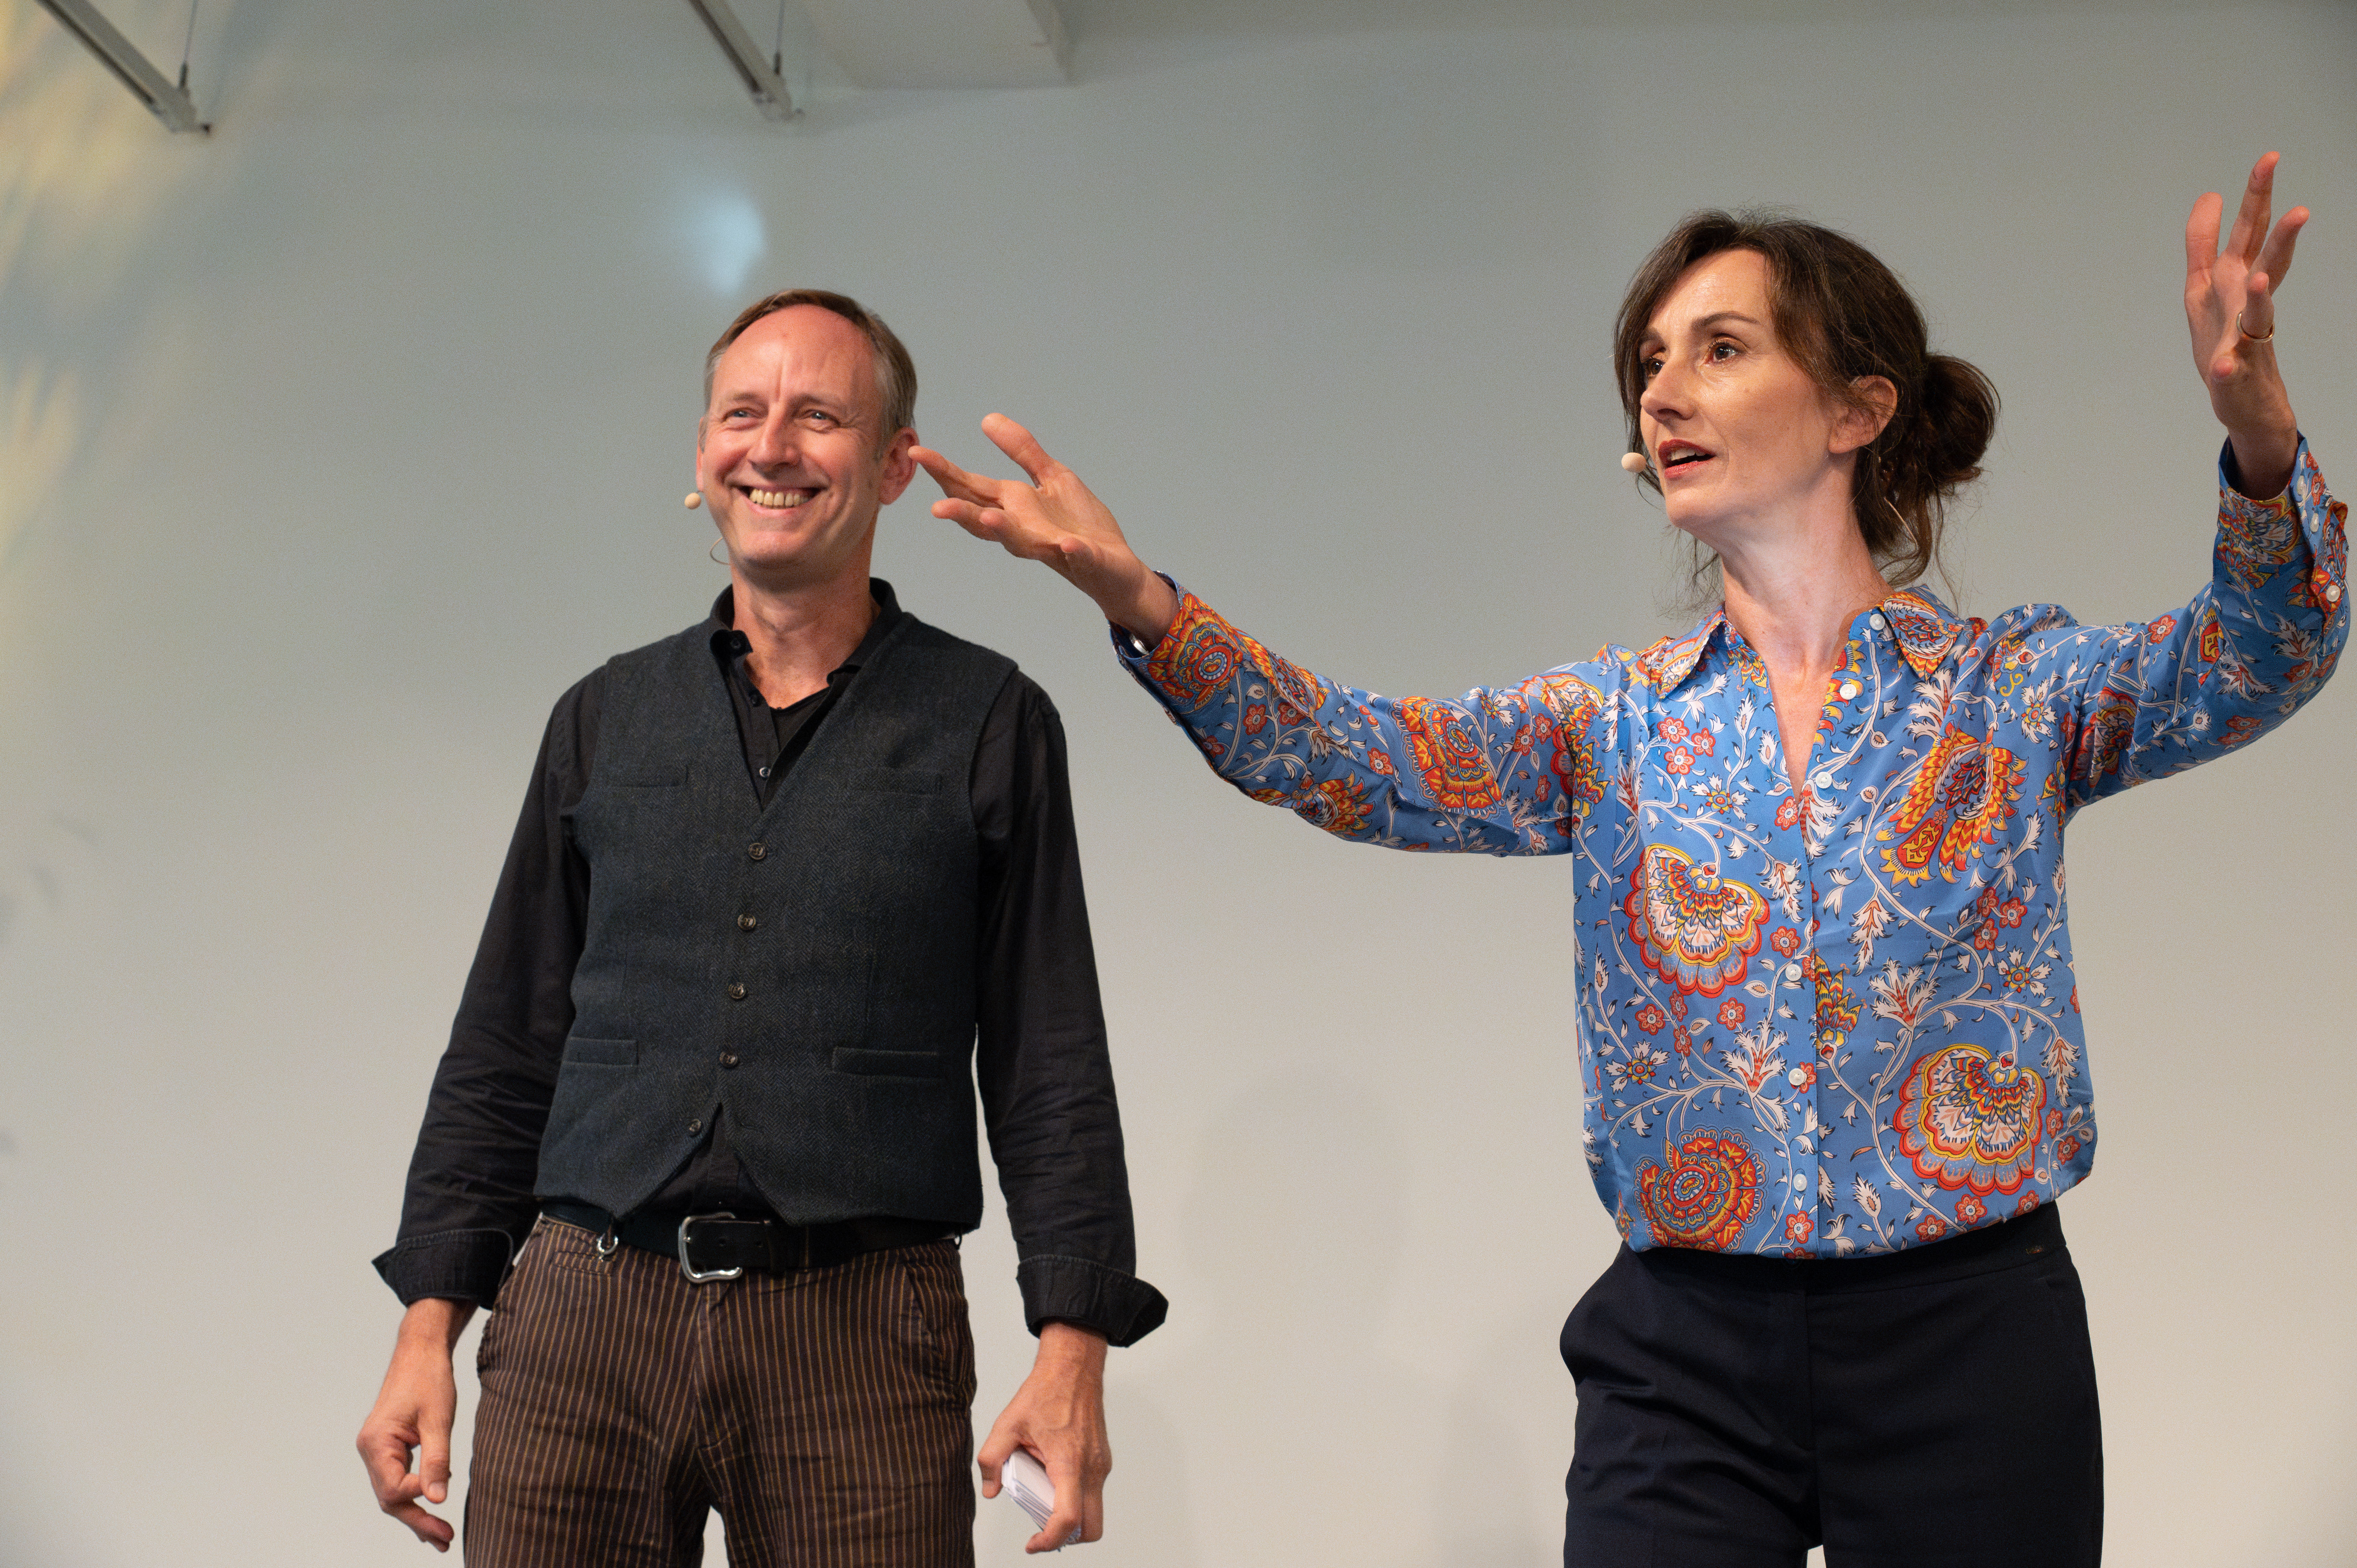 Barbara Klehr und Leon Düvel vom Berliner Improvisationstheater "Gorillas" sprechen von der Bühne hinab mit dem Publikum.